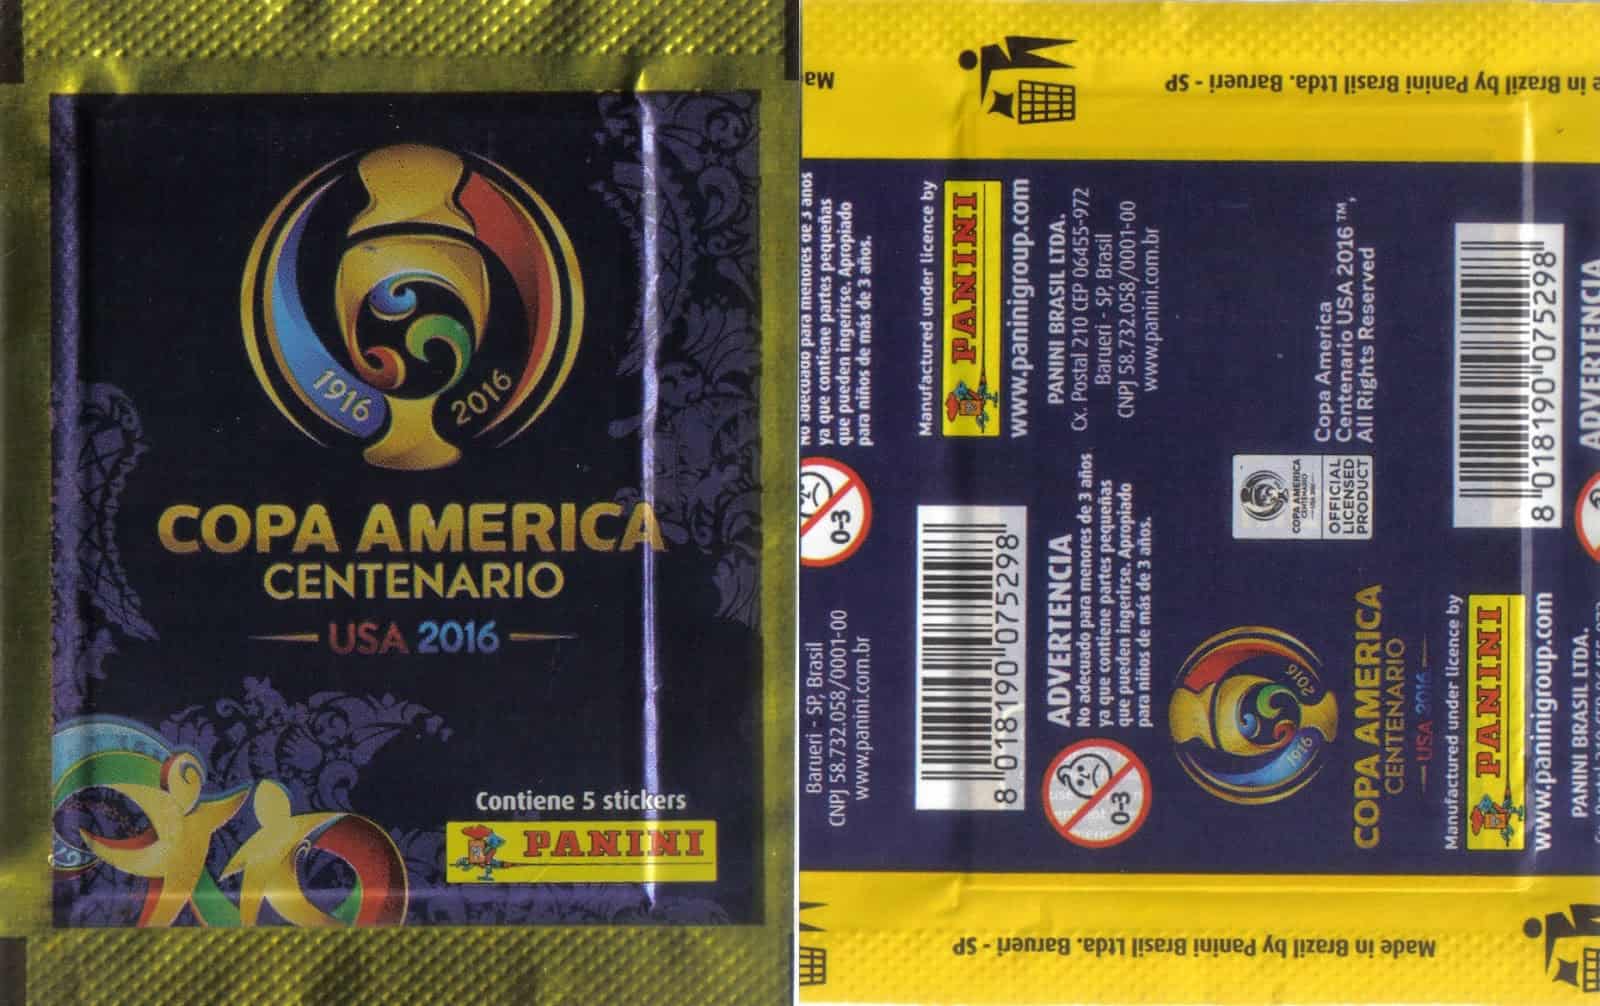 Made in Brazil, com a frase "Contiene 5 stickers".
Verso na horizontal, sem o preço.
Esse pacotinho foi distribuído nos países da América do Sul, exceto Argentina.